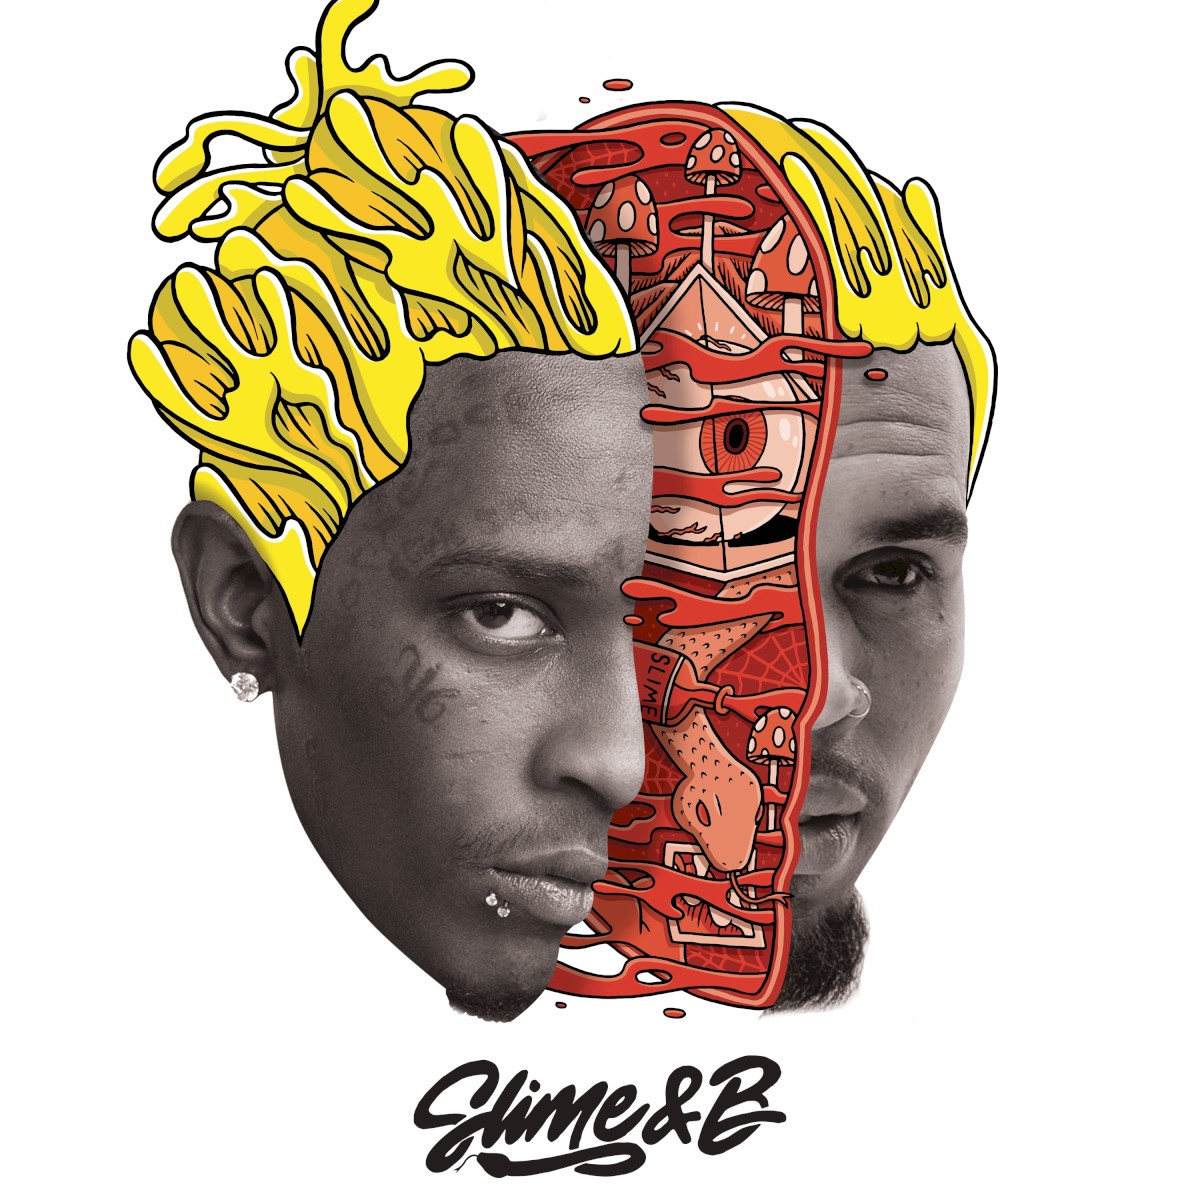 Chris Brown & Young Thug Slime &amp; B cover artwork